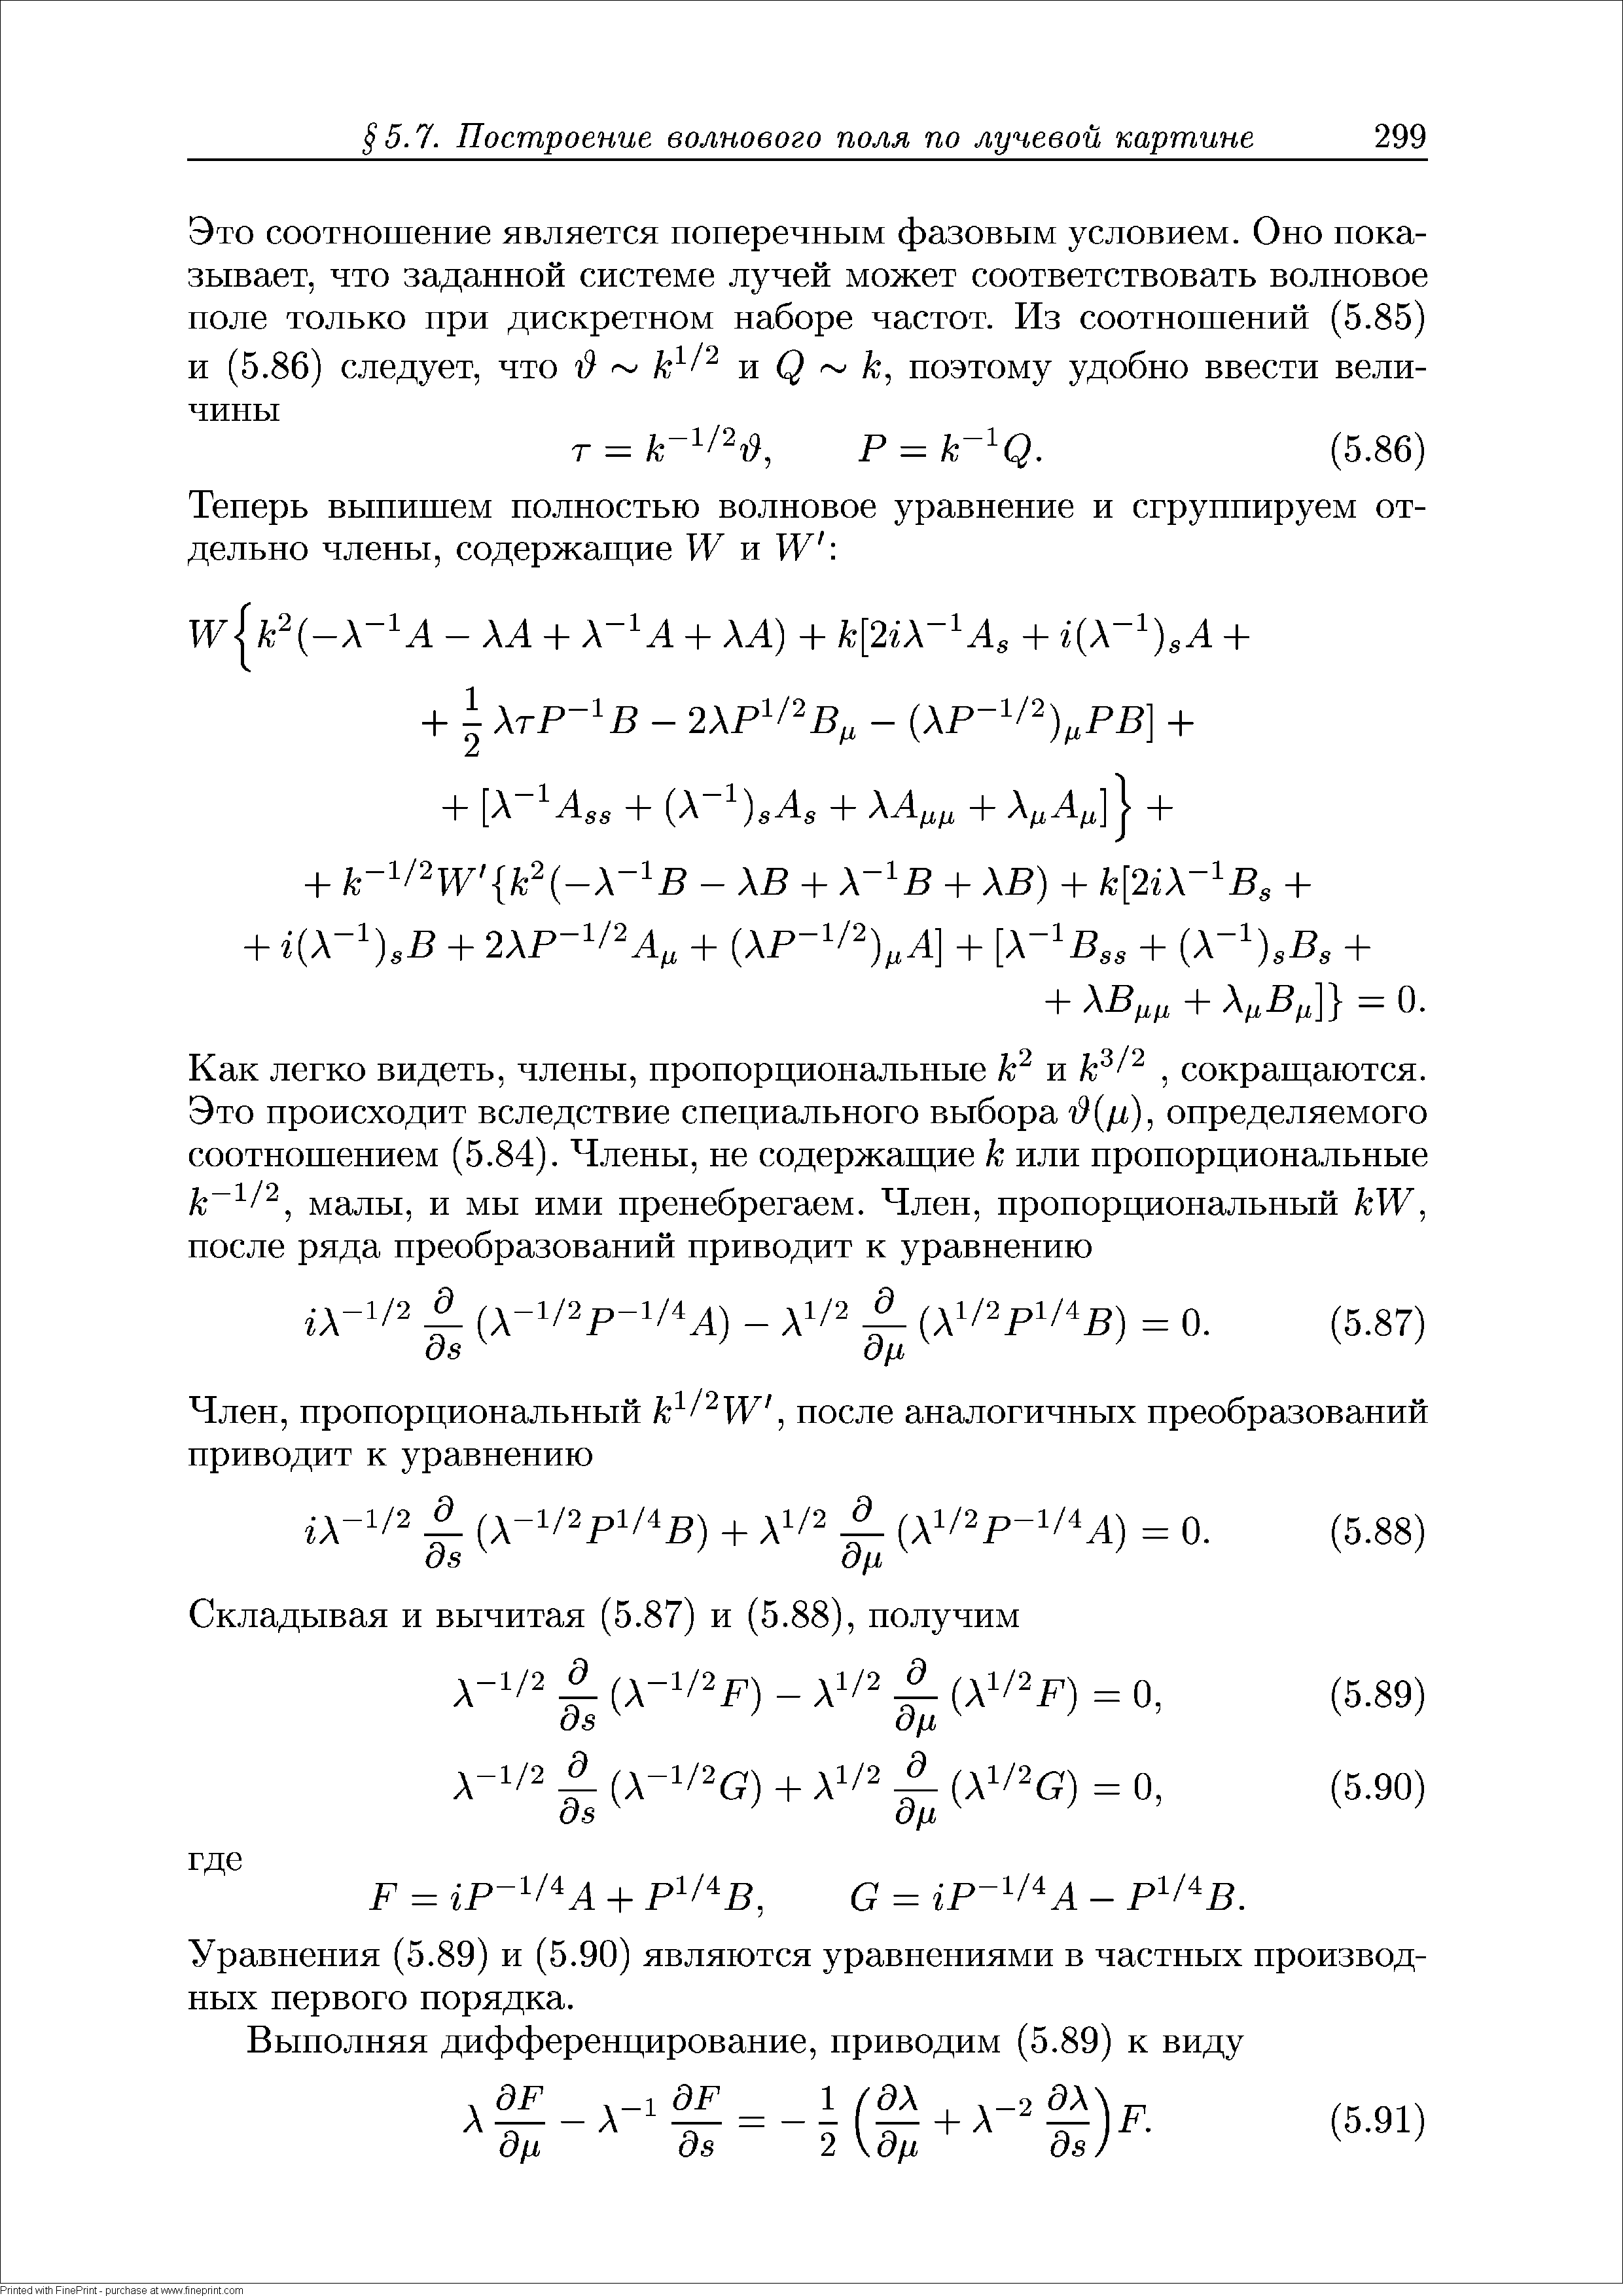 Уравнения (5.89) и (5.90) являются уравнениями в частных производных первого порядка.
